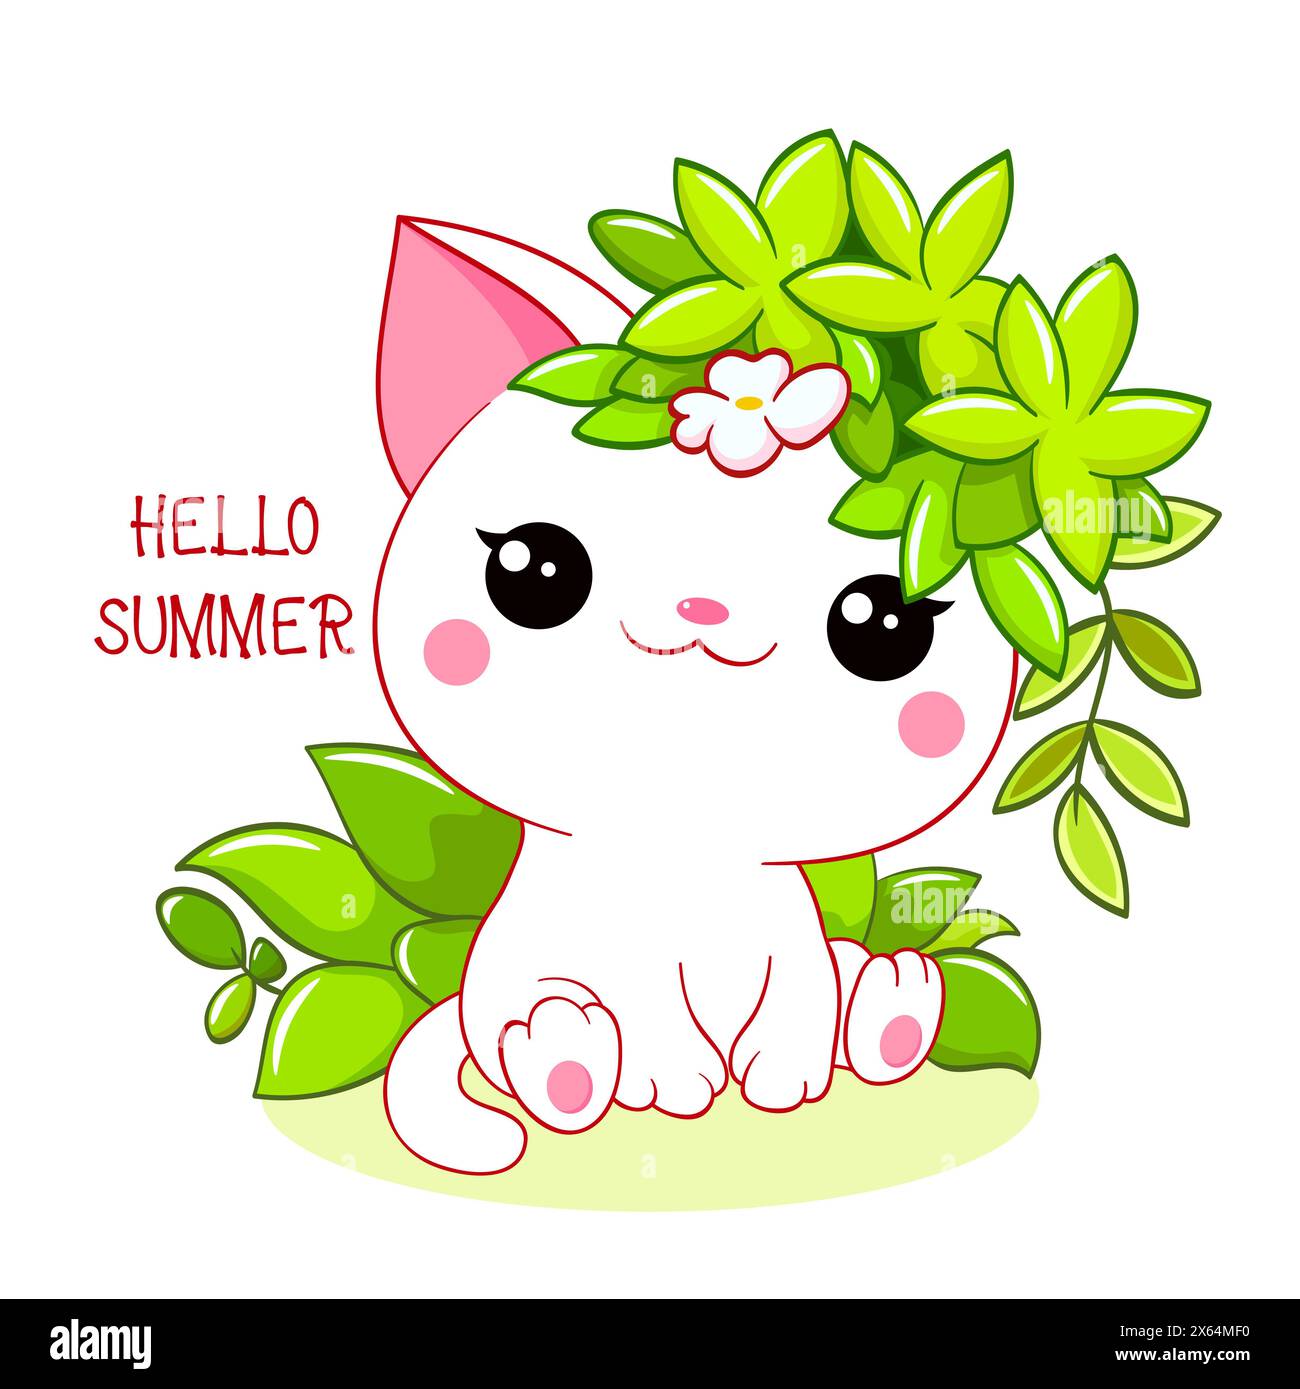 Carte de saison mignonne en style kawaii. Joli petit chat avec des feuilles vertes. Inscription Bonjour l'été. Peut être utilisé pour l'impression de t-shirt, les autocollants, la voiture de voeux Banque D'Images